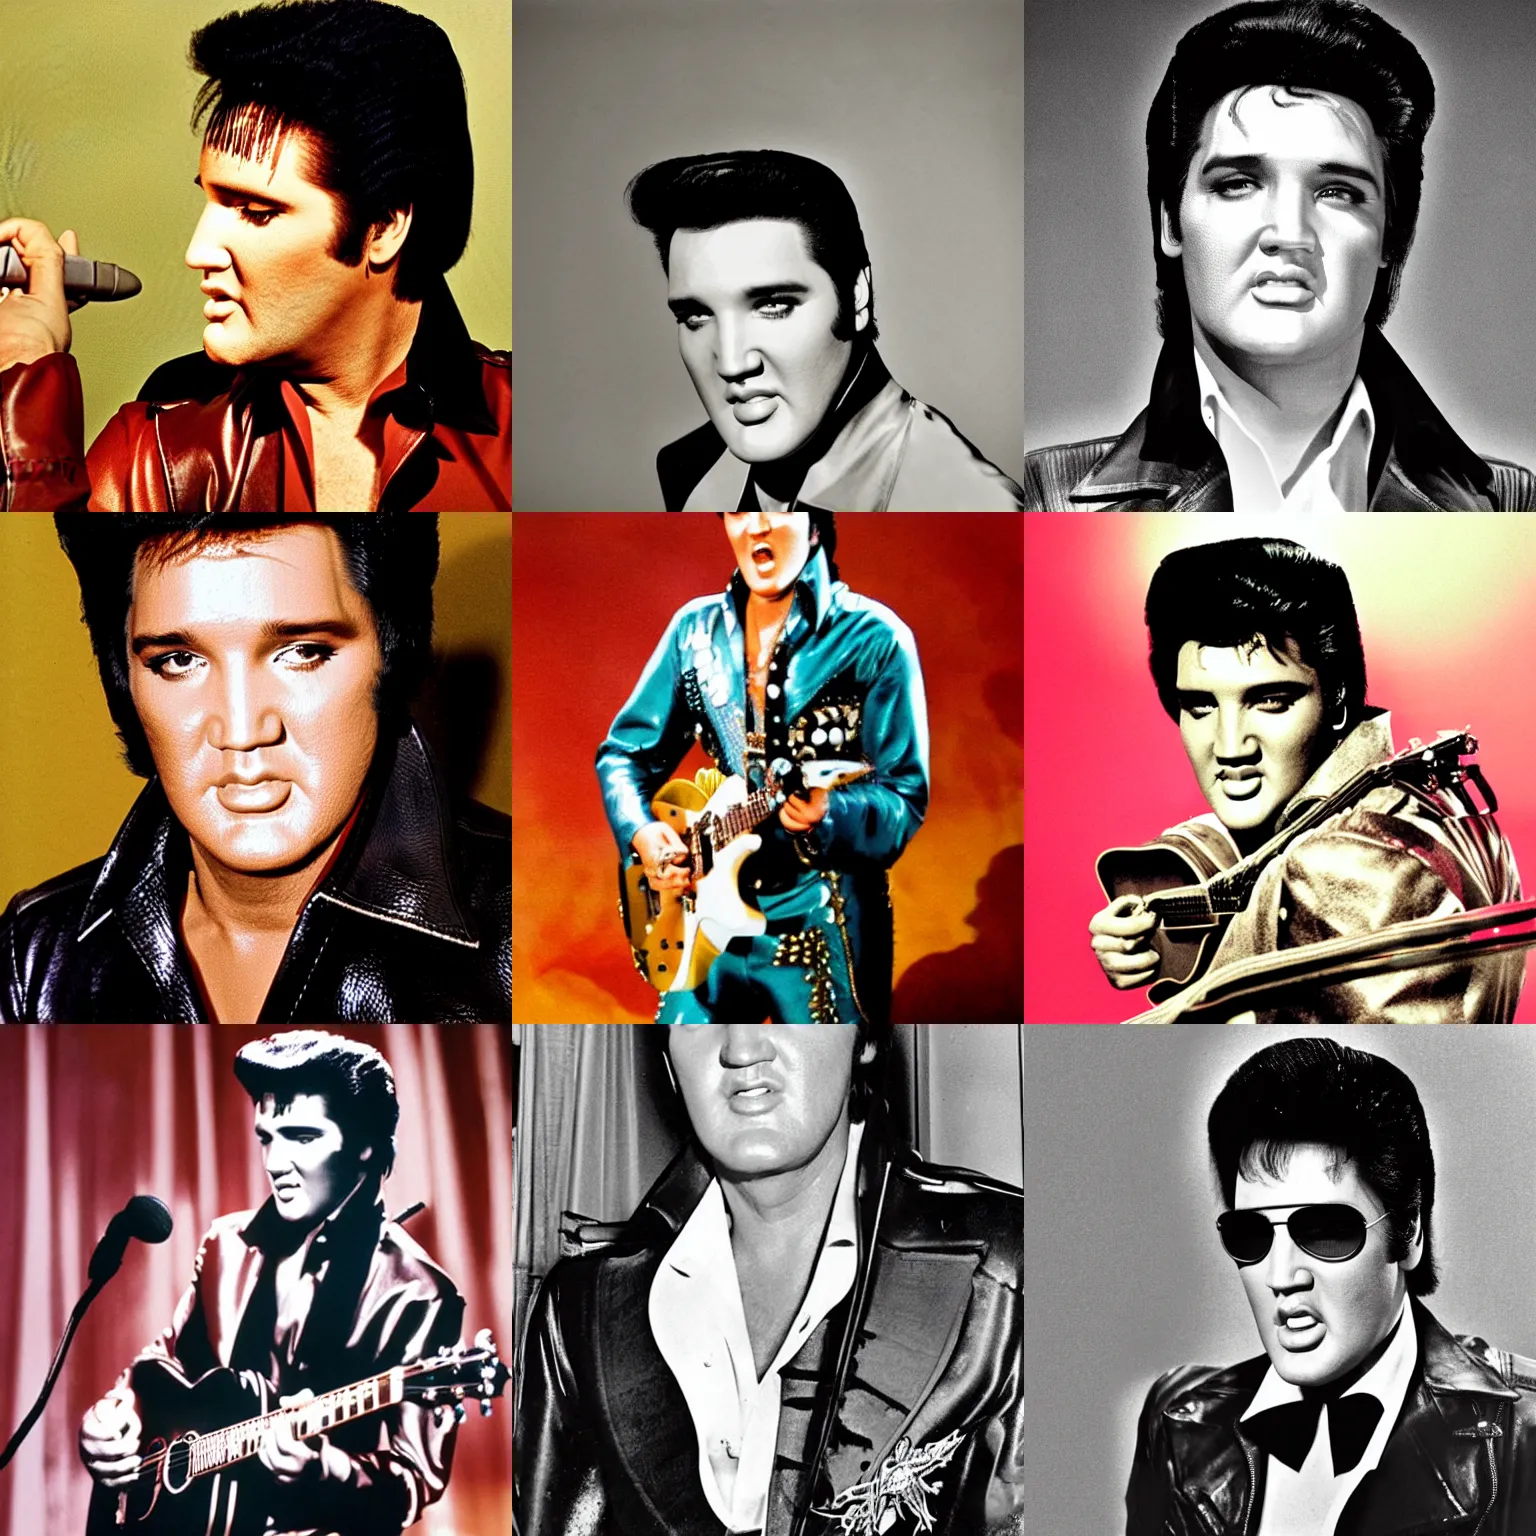 Prompt: Elvis